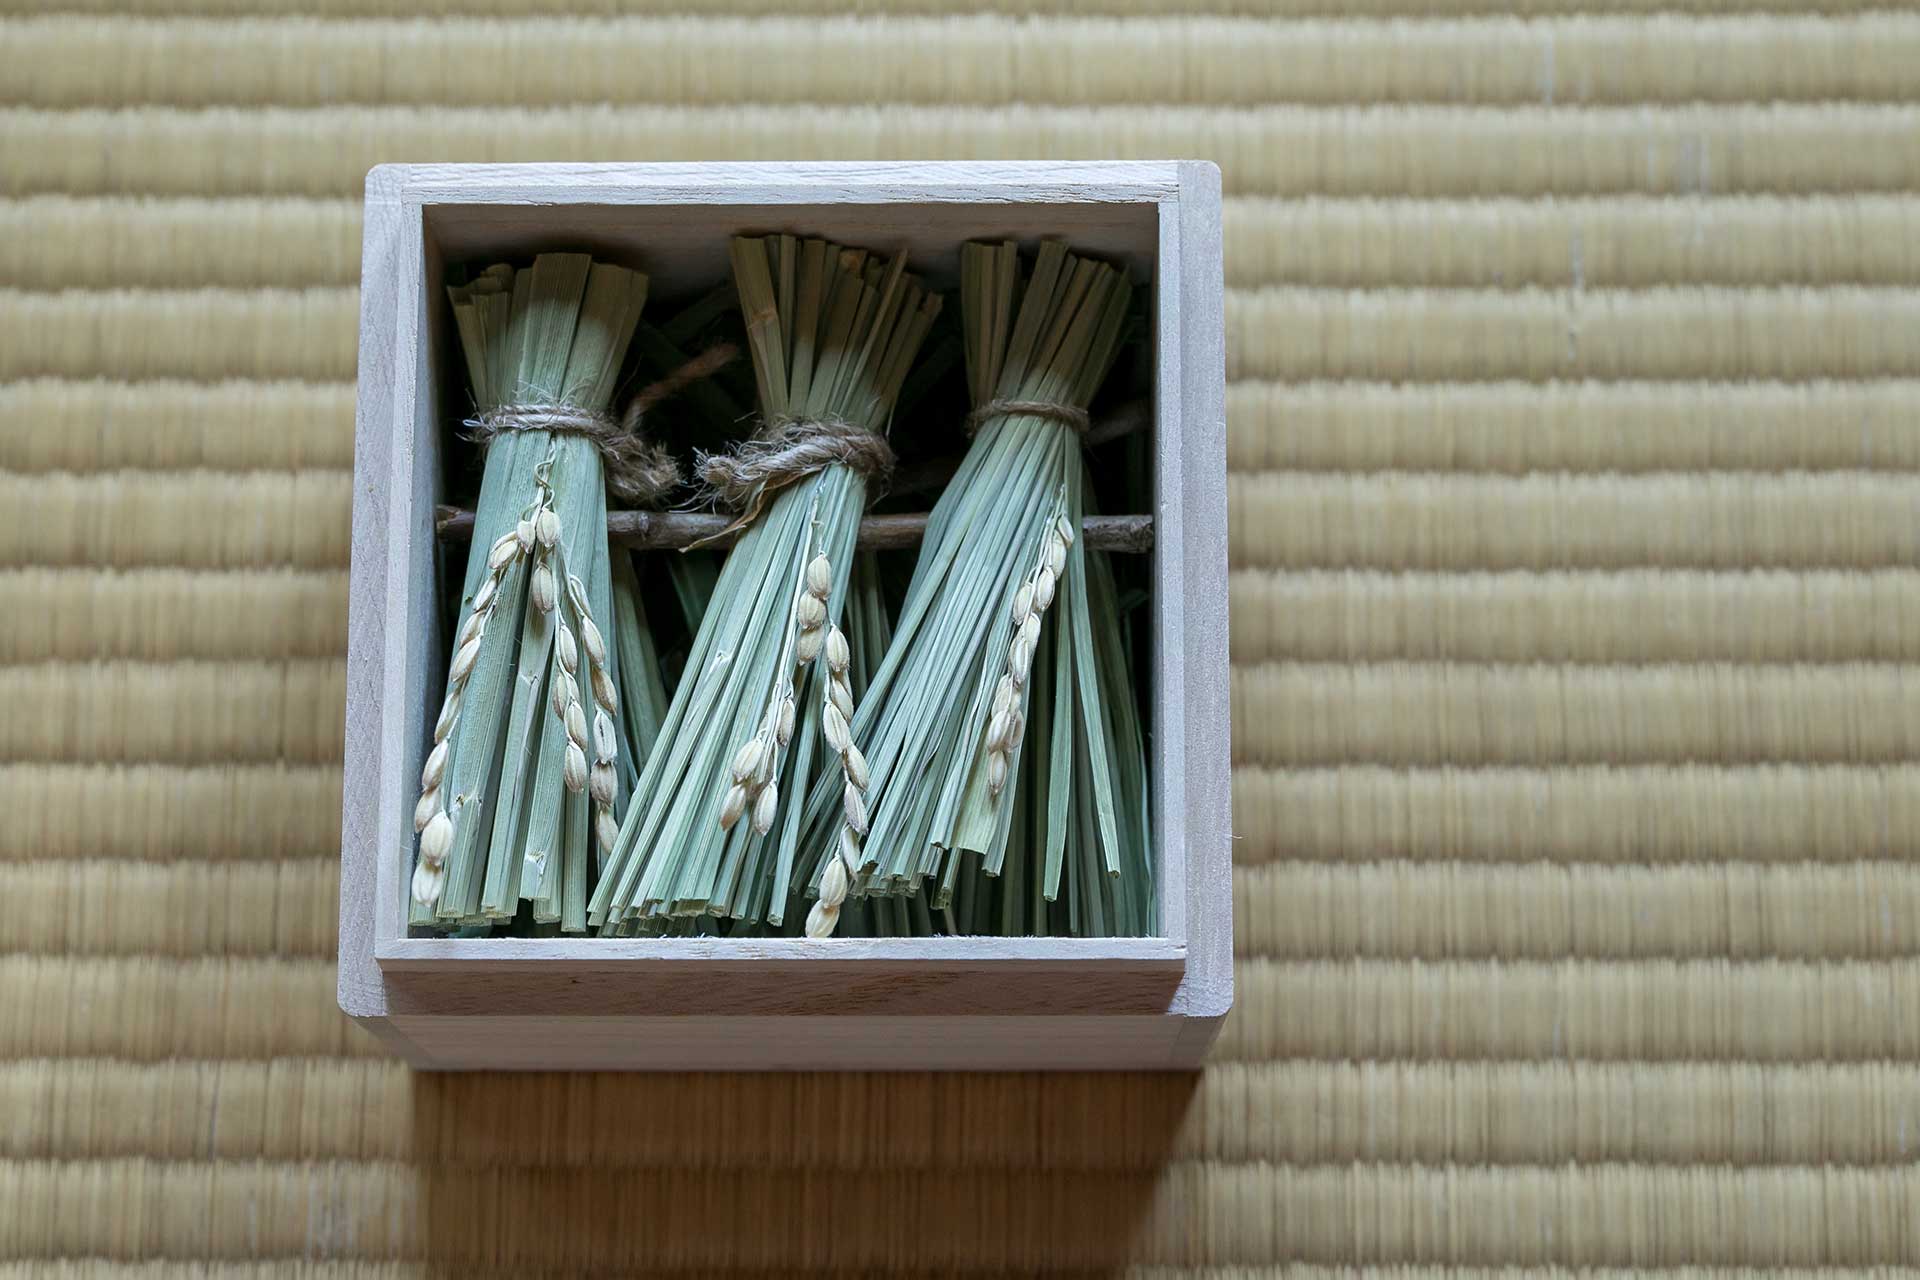 「秋分」 (9月23日〜10月7日。昼と夜の長さが同じになる) 。«稲掛け》 秋分になると稲の収穫が始まる。稲を掛けて天日干しする見える日本の伝統的な田んぼの稲掛けの風景を表現。素材：稲。